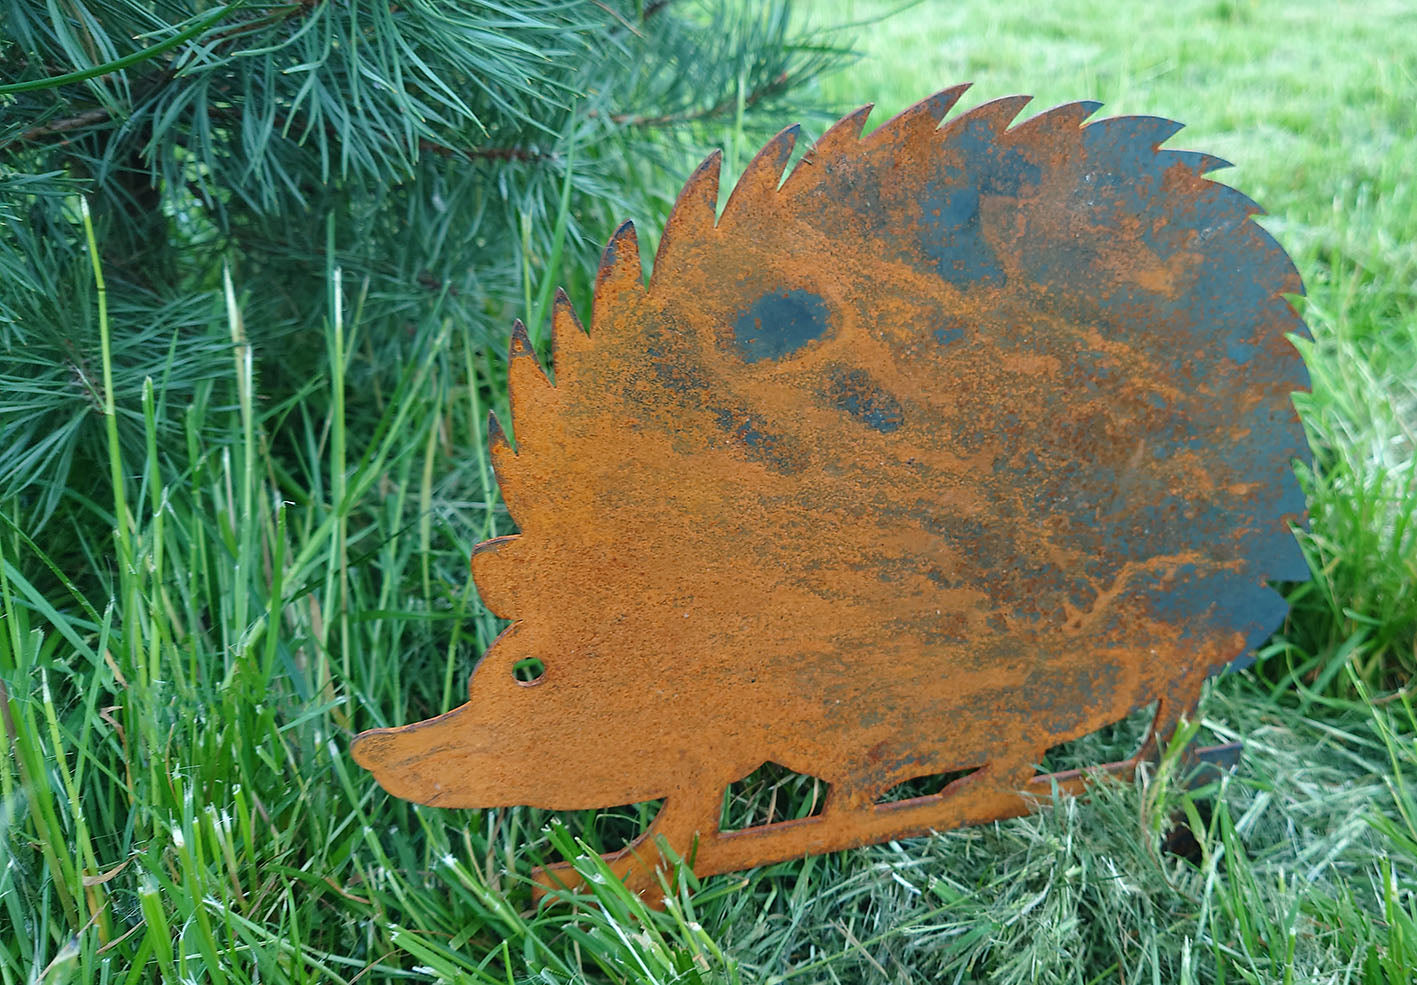 Bellamy Rustic Steel Garden Art Metal Hedgehog Ornament | Indoor Outdoors